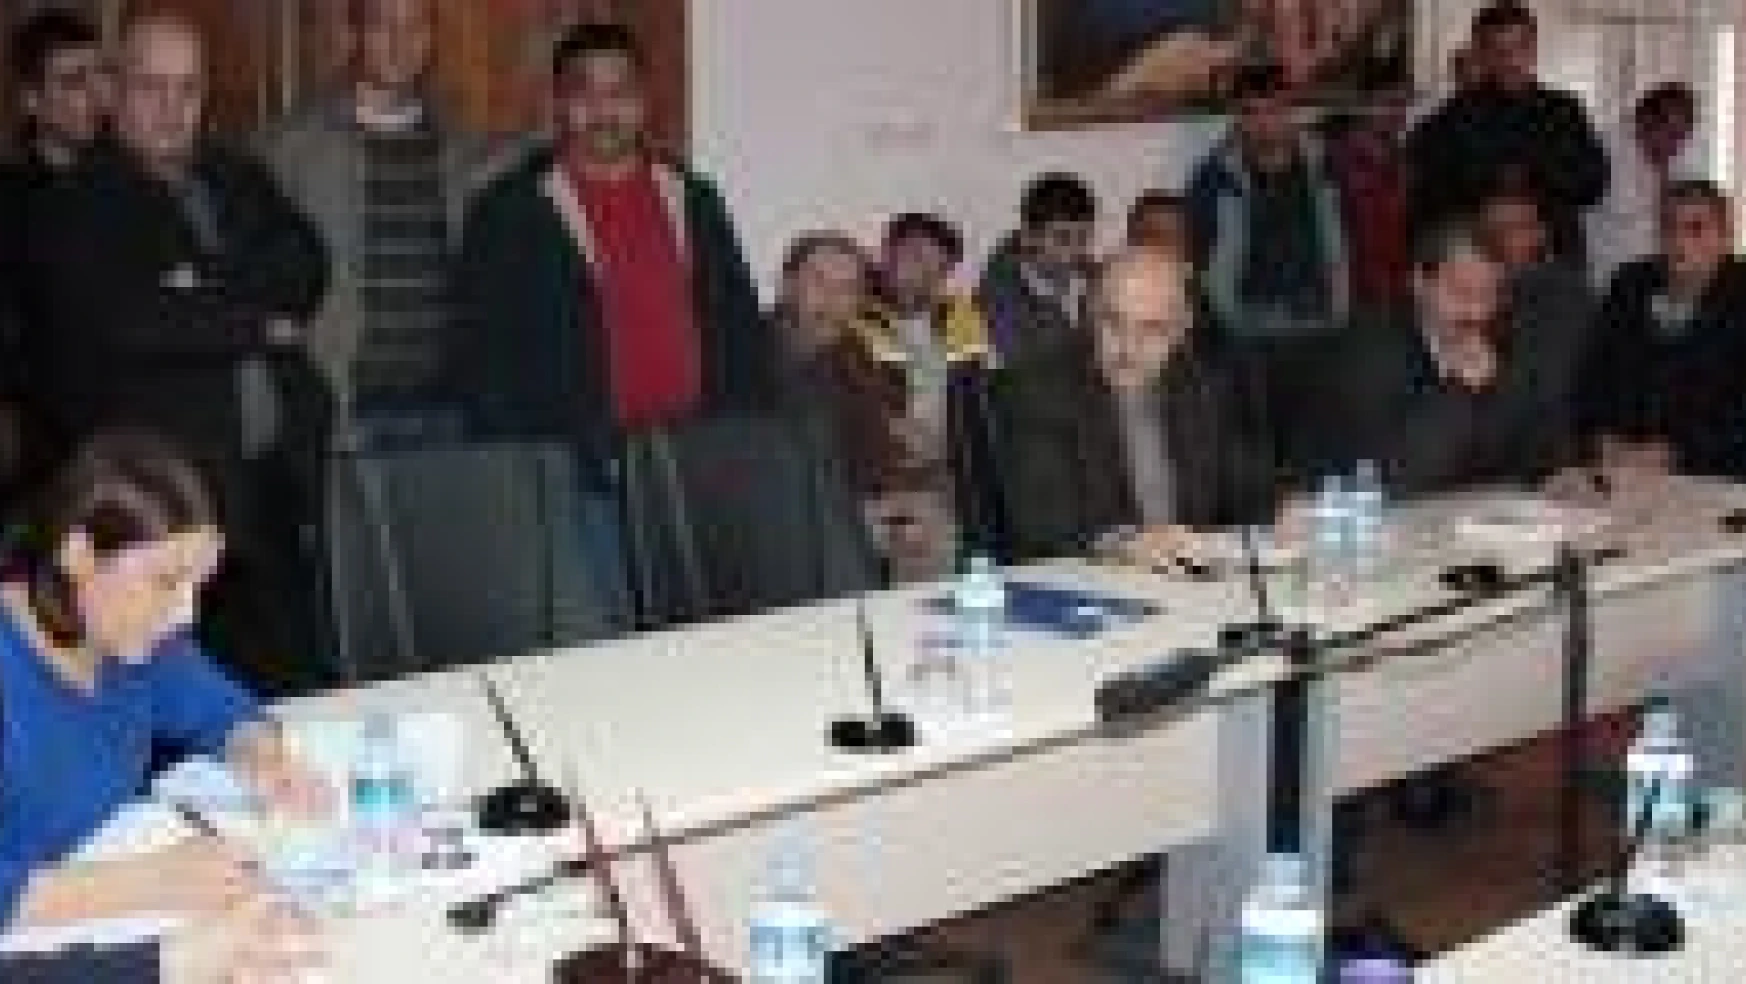 Amasra Belediye Meclisinde arsa krizi